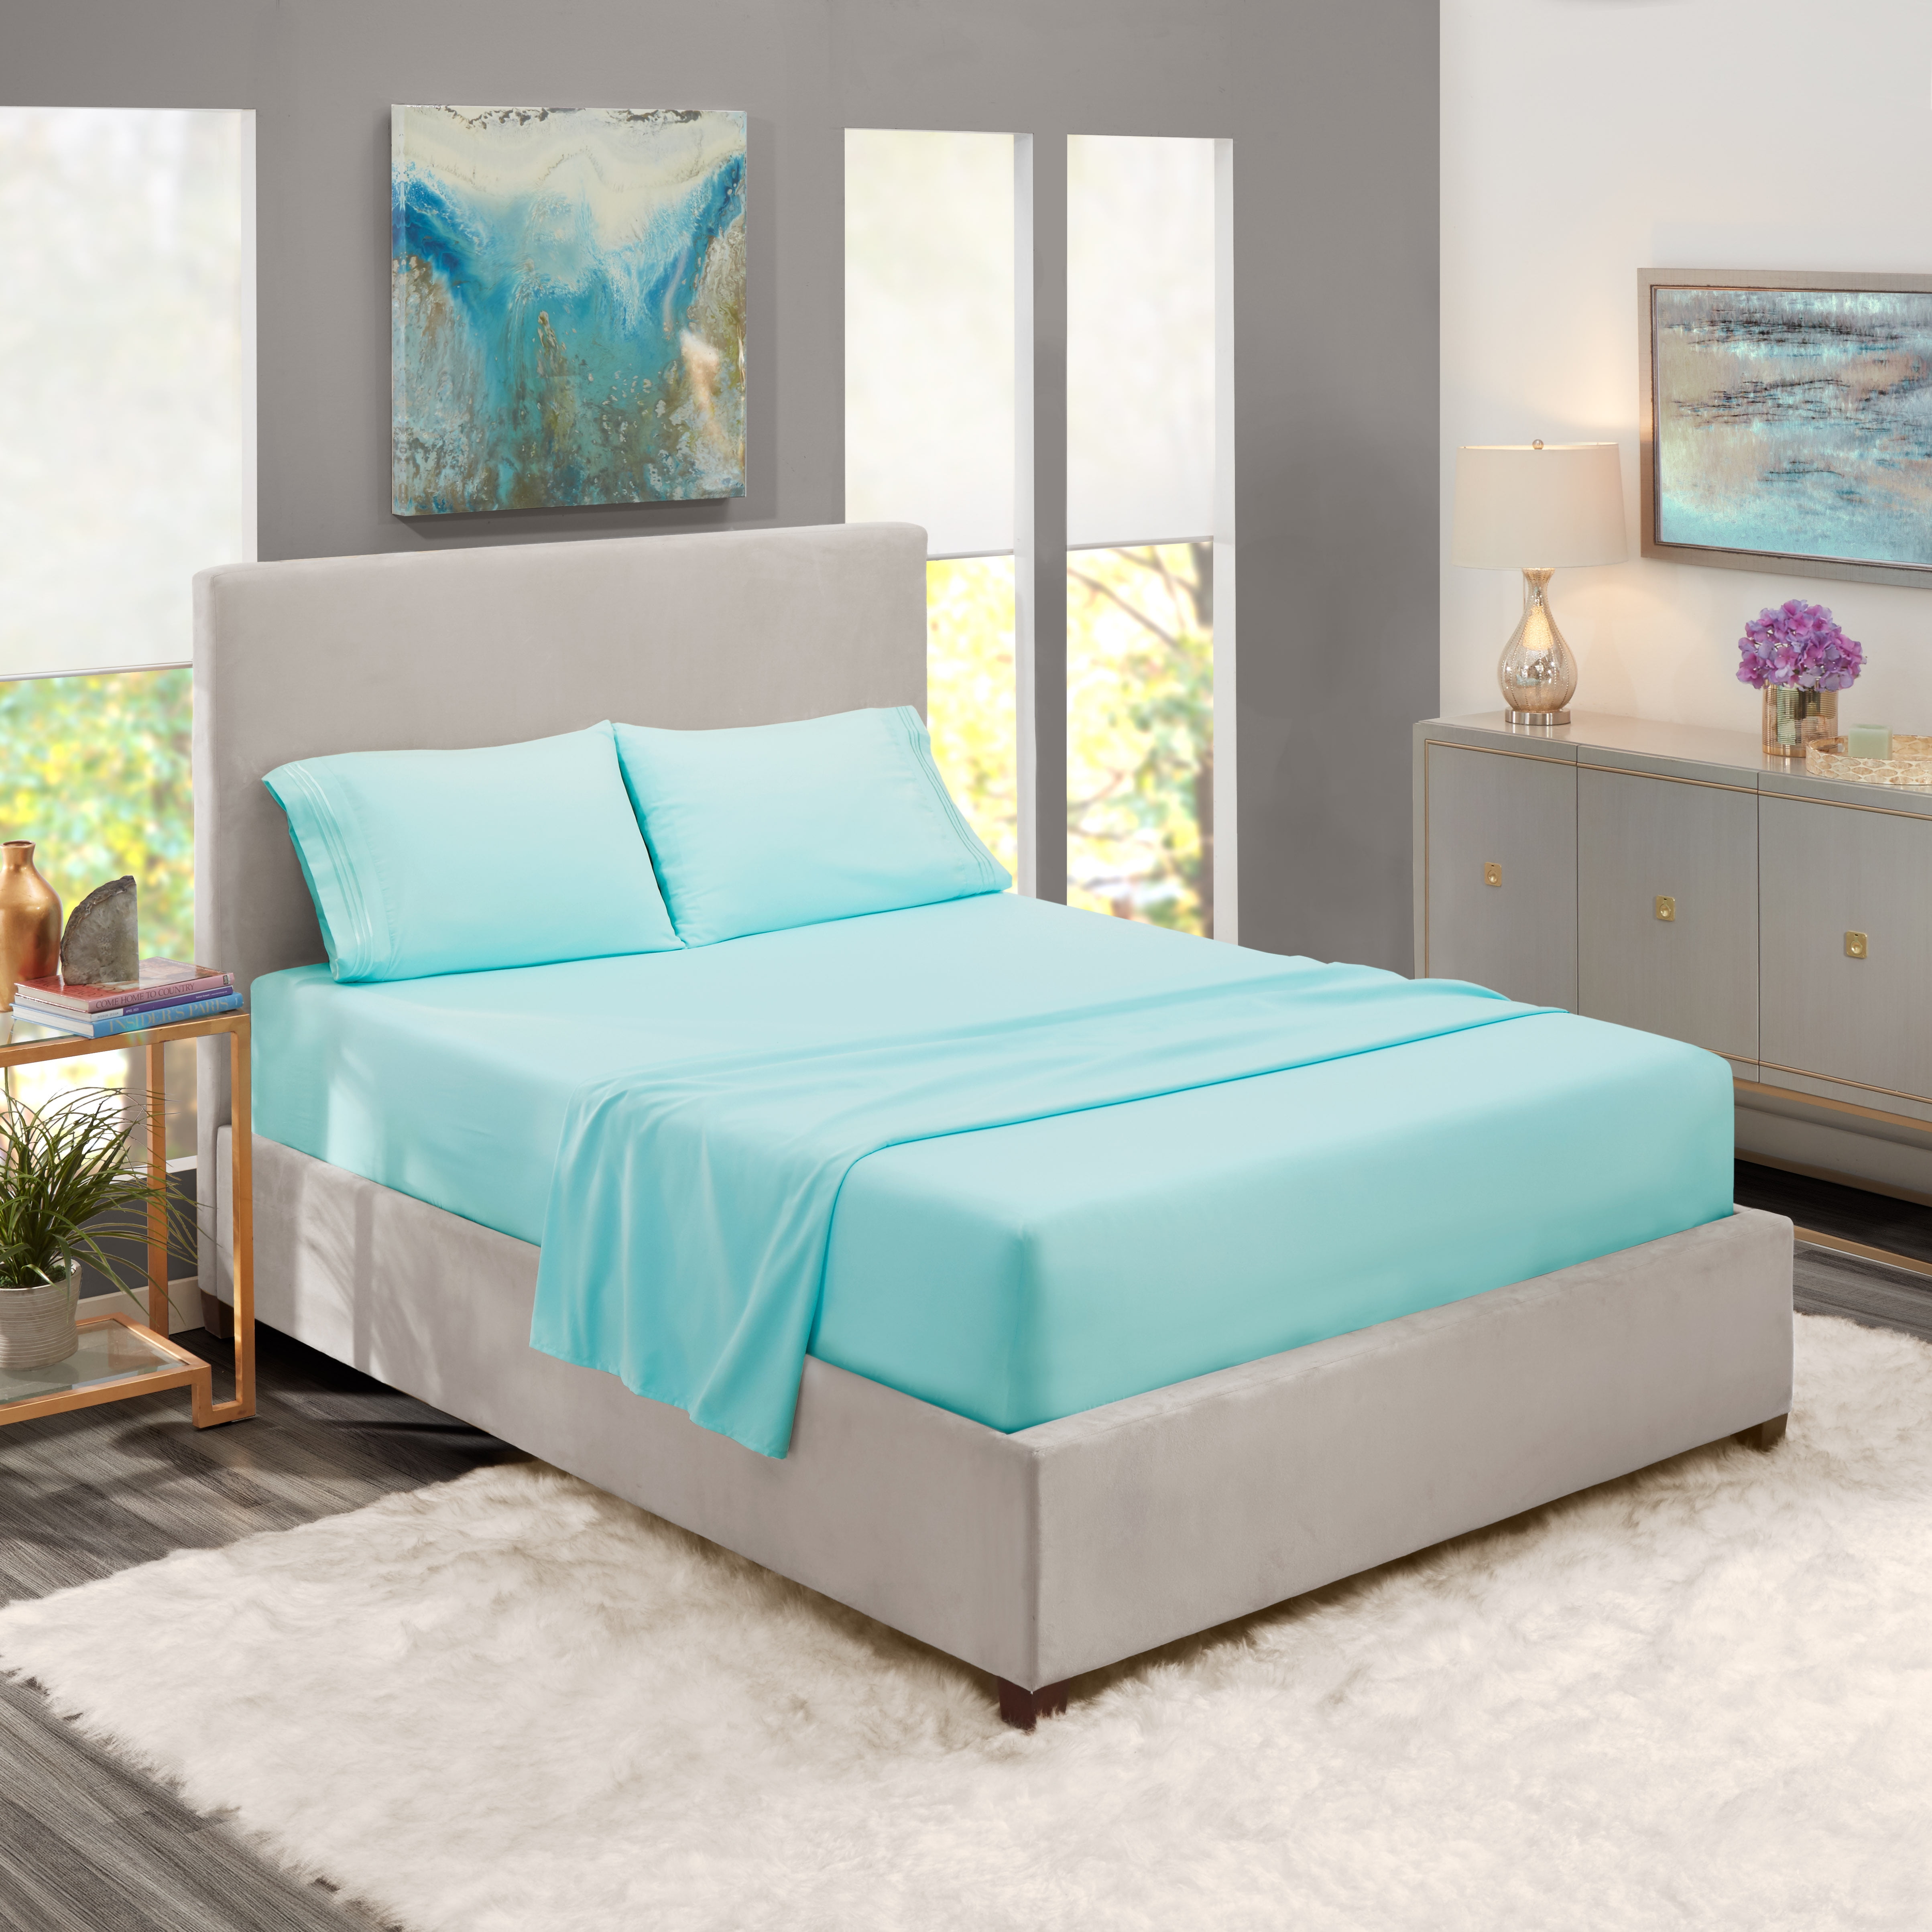 Twin Xl Size Bed Sheets Set Aqua Blue, Aqua Twin Bed Sheets